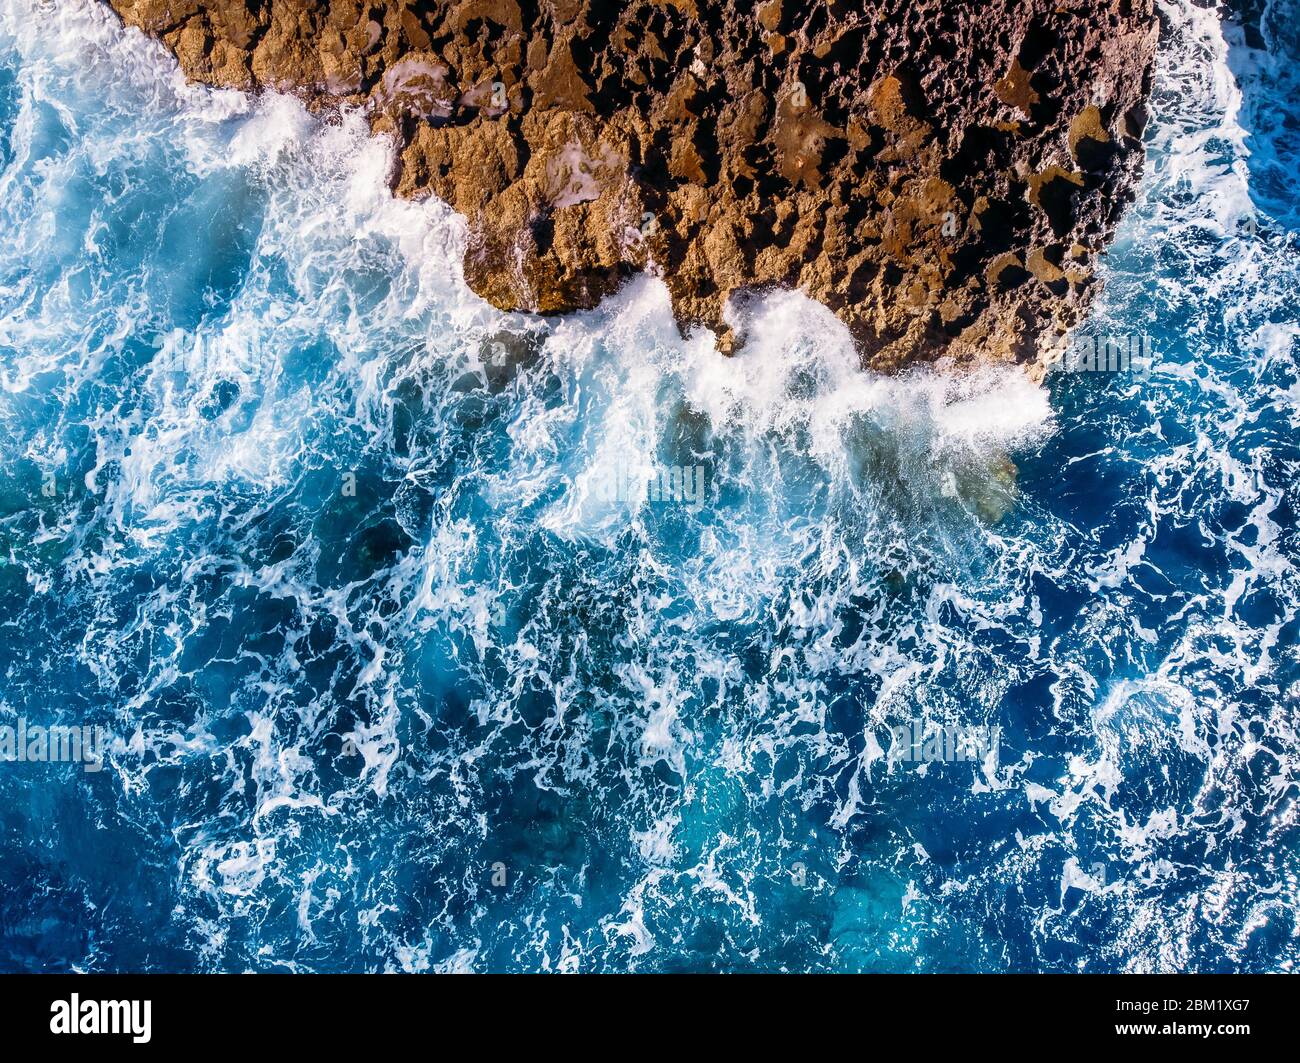 Vista dall'alto mare azzurro con onde che battono sulla spiaggia e sulle rocce. Foto aerea. Foto Stock